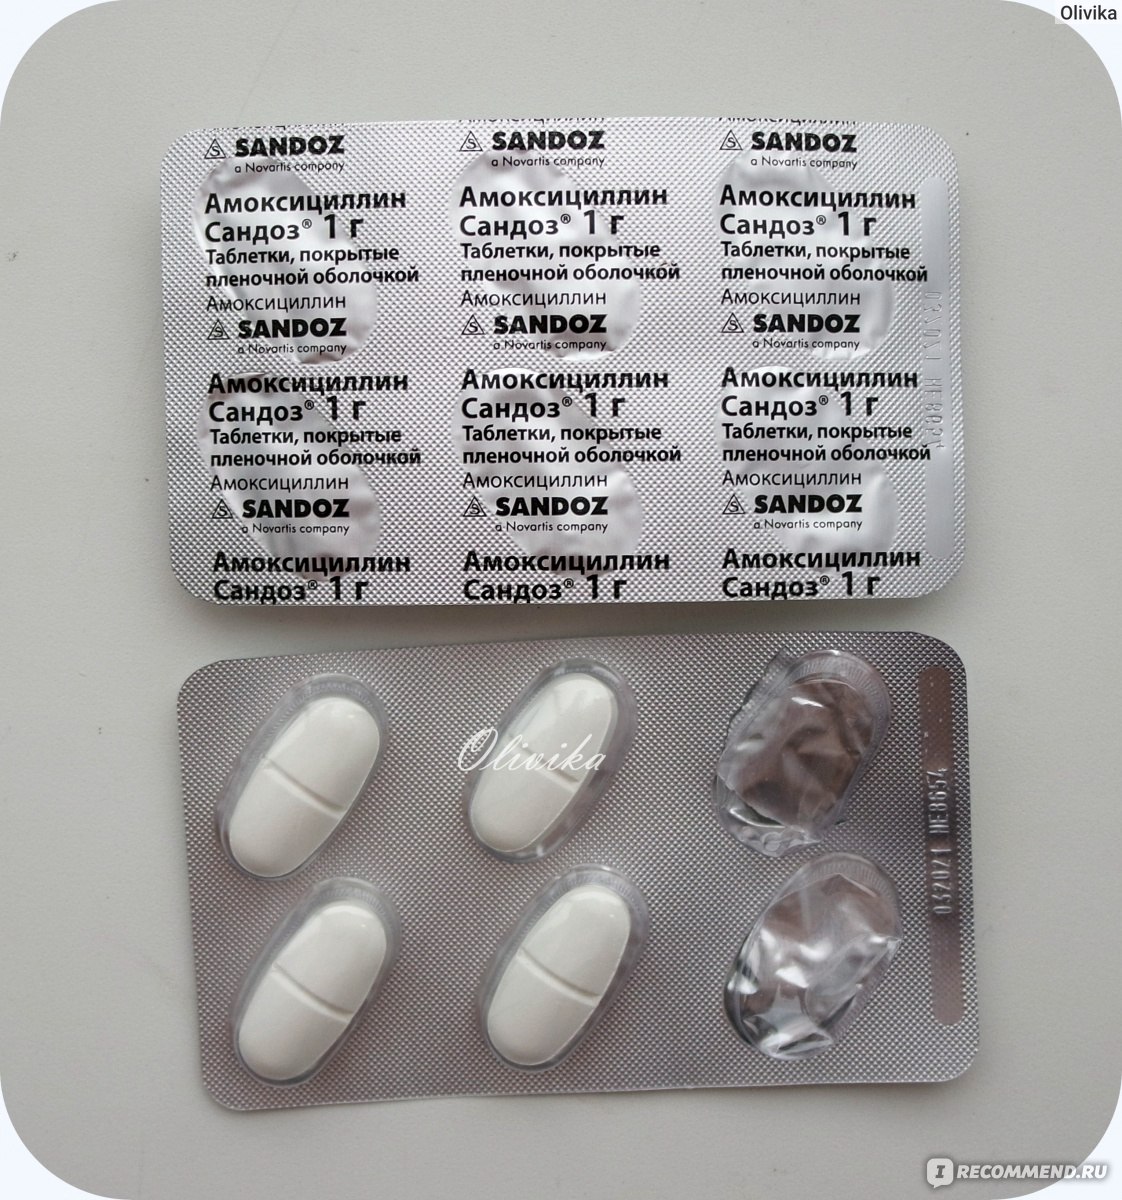 Антибиотики нового поколения таблетках. Антибиотики в таблетках. Название антибиотиков в таблетках. Сильные антибиотики в таблетках названия. Антибиотики таблетки капсулы.